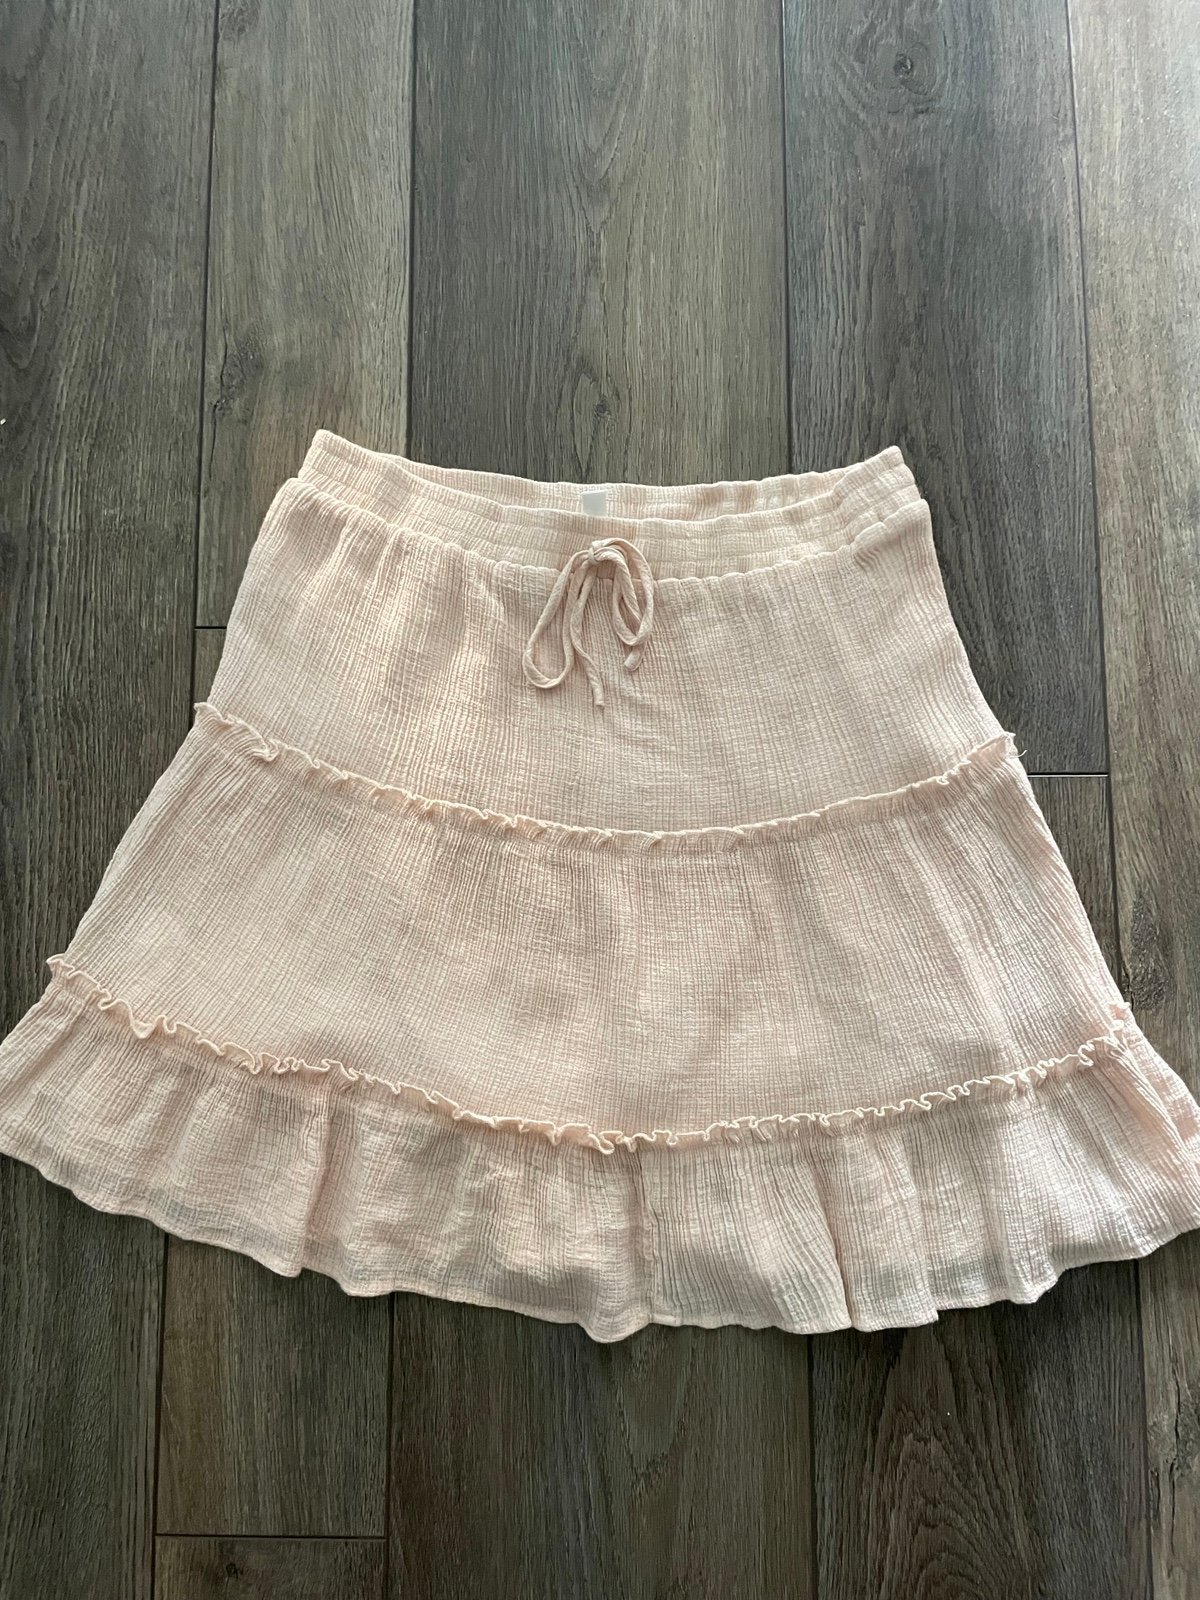 Perfect Love Tree women’s light peach mini skirt size L